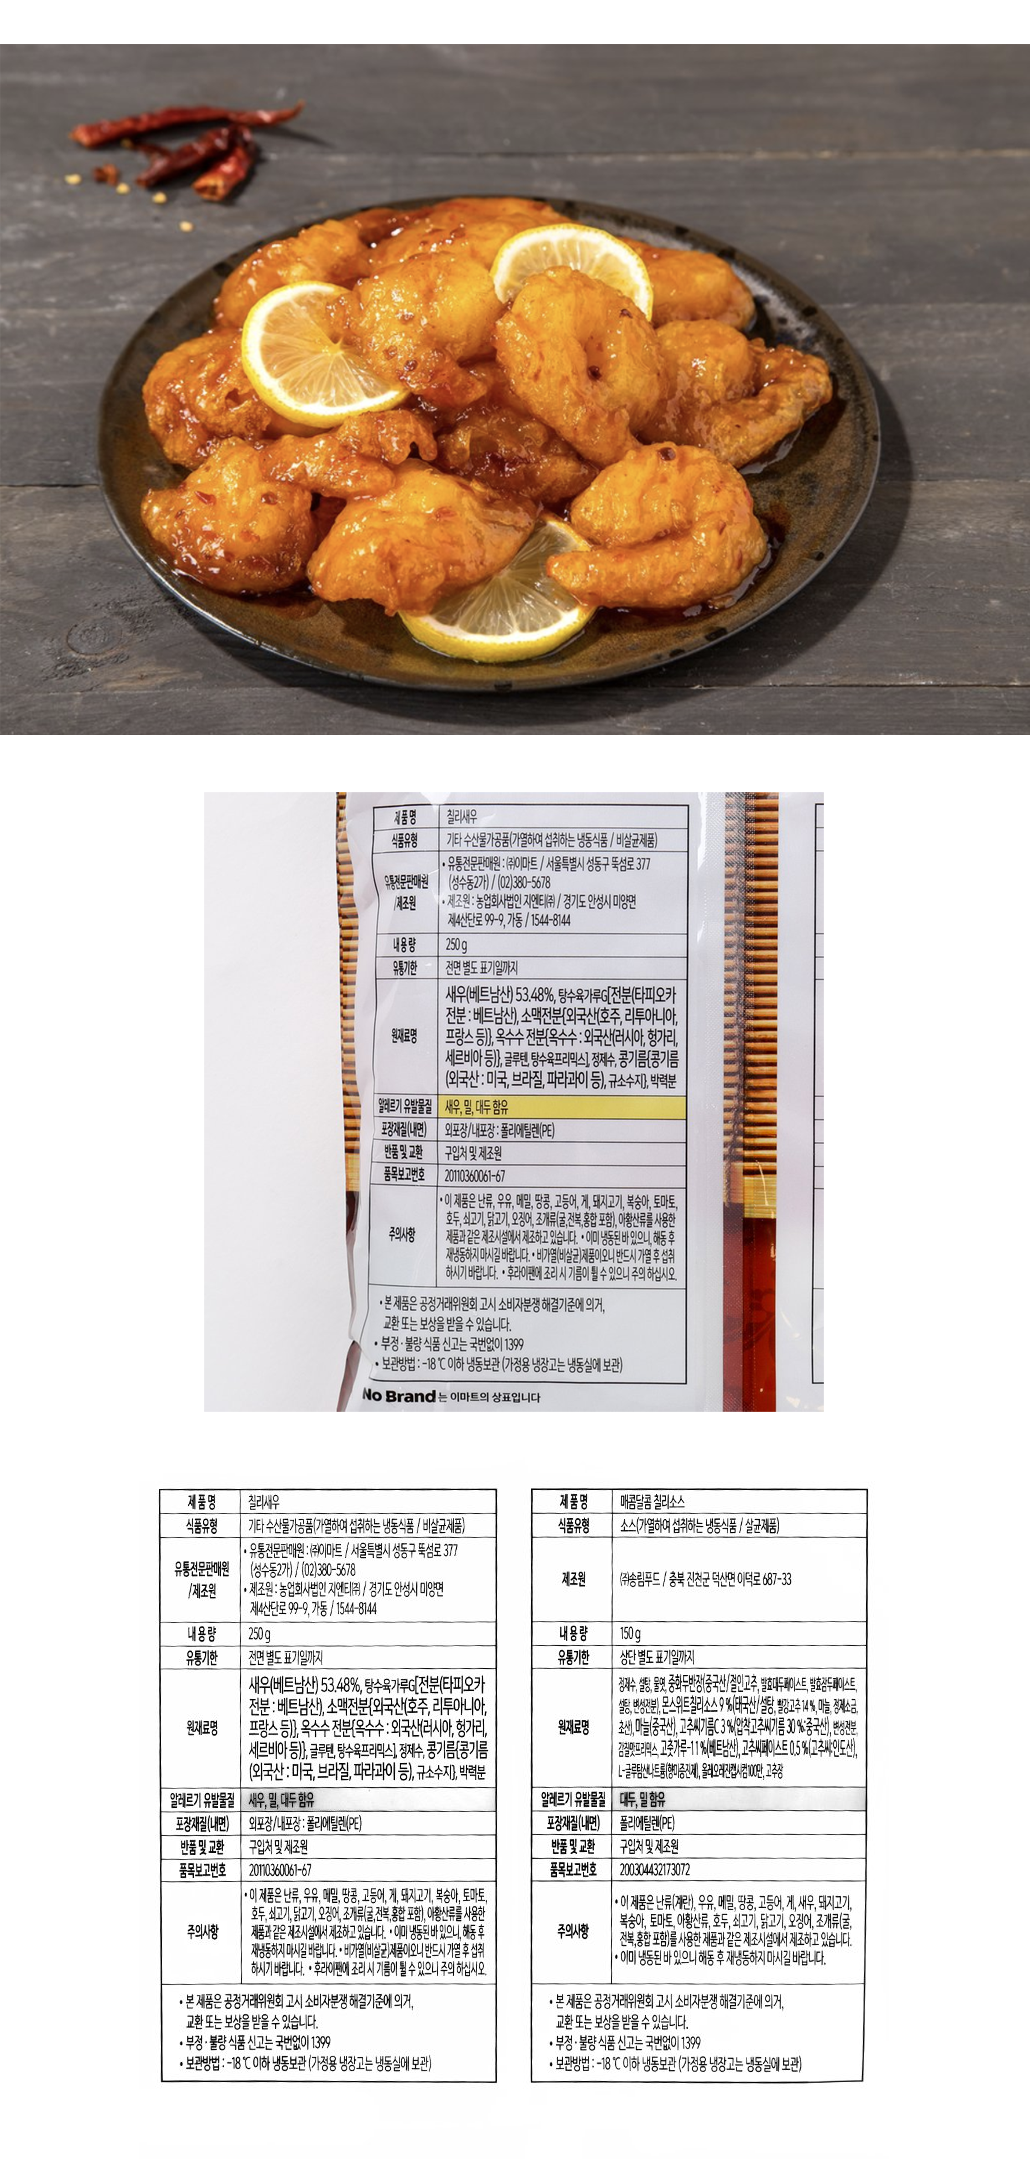 韓國食品-[노브랜드 No Brand] 칠리 새우 400g